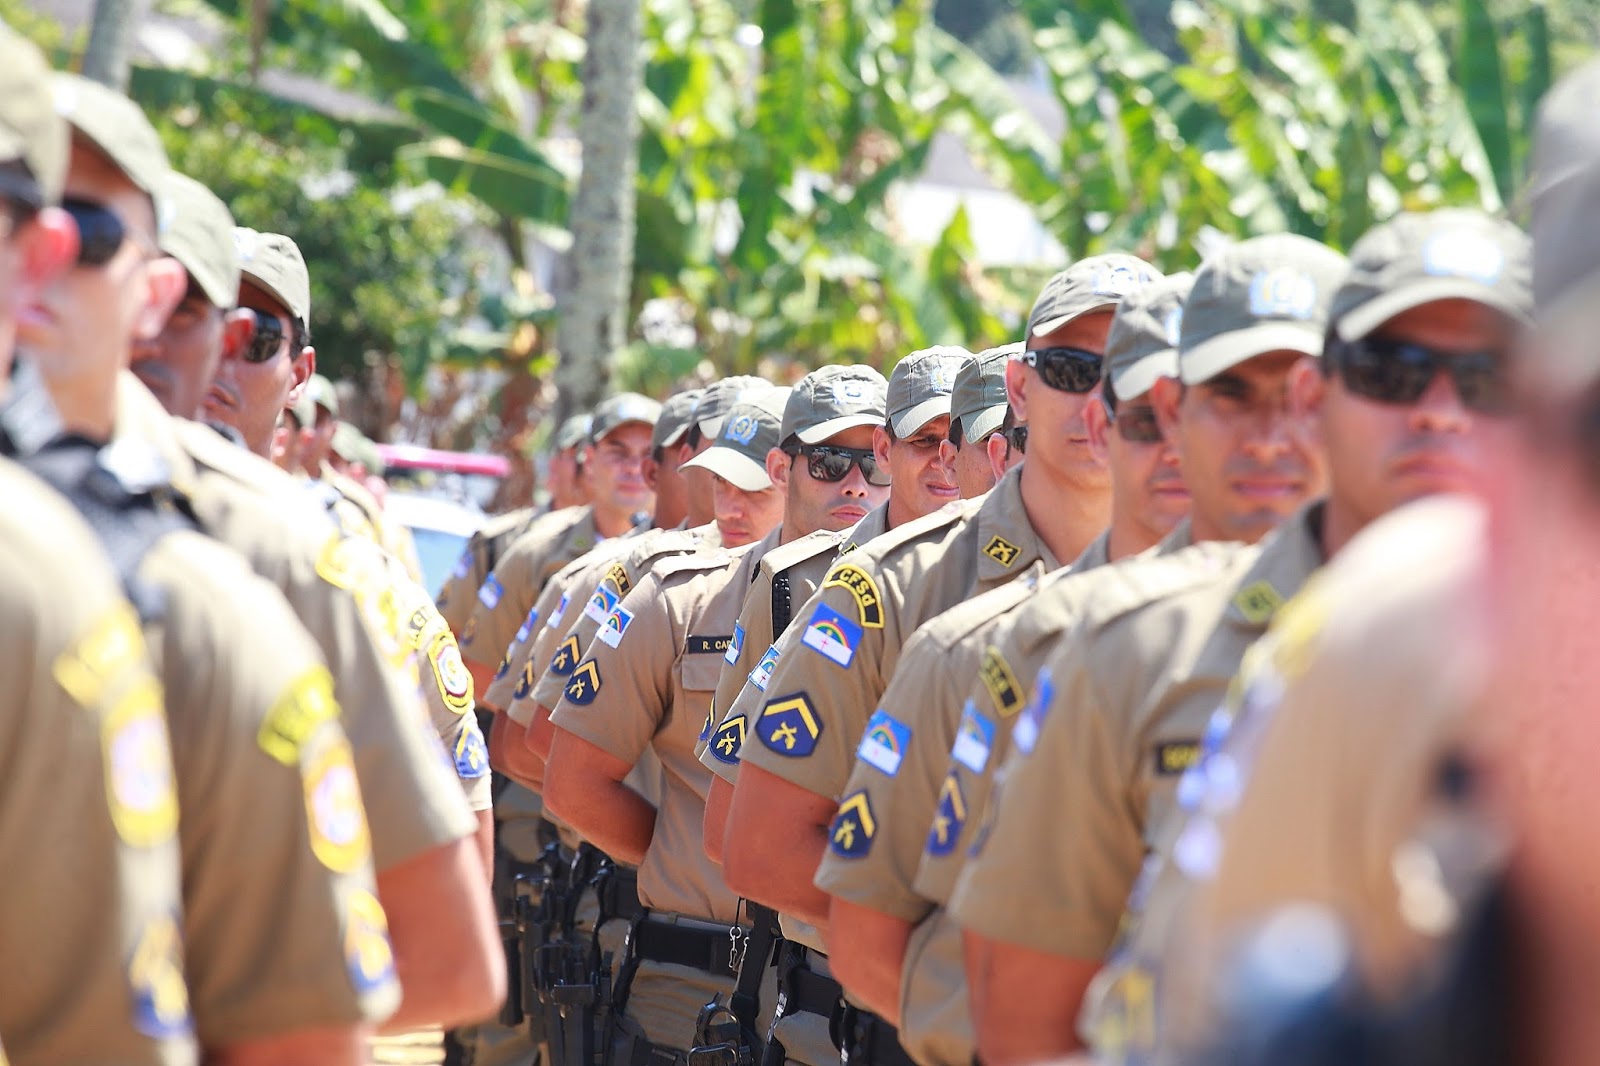 Policia Militar PE - O que você precisa saber a respeito do Concurso PMMG 2018